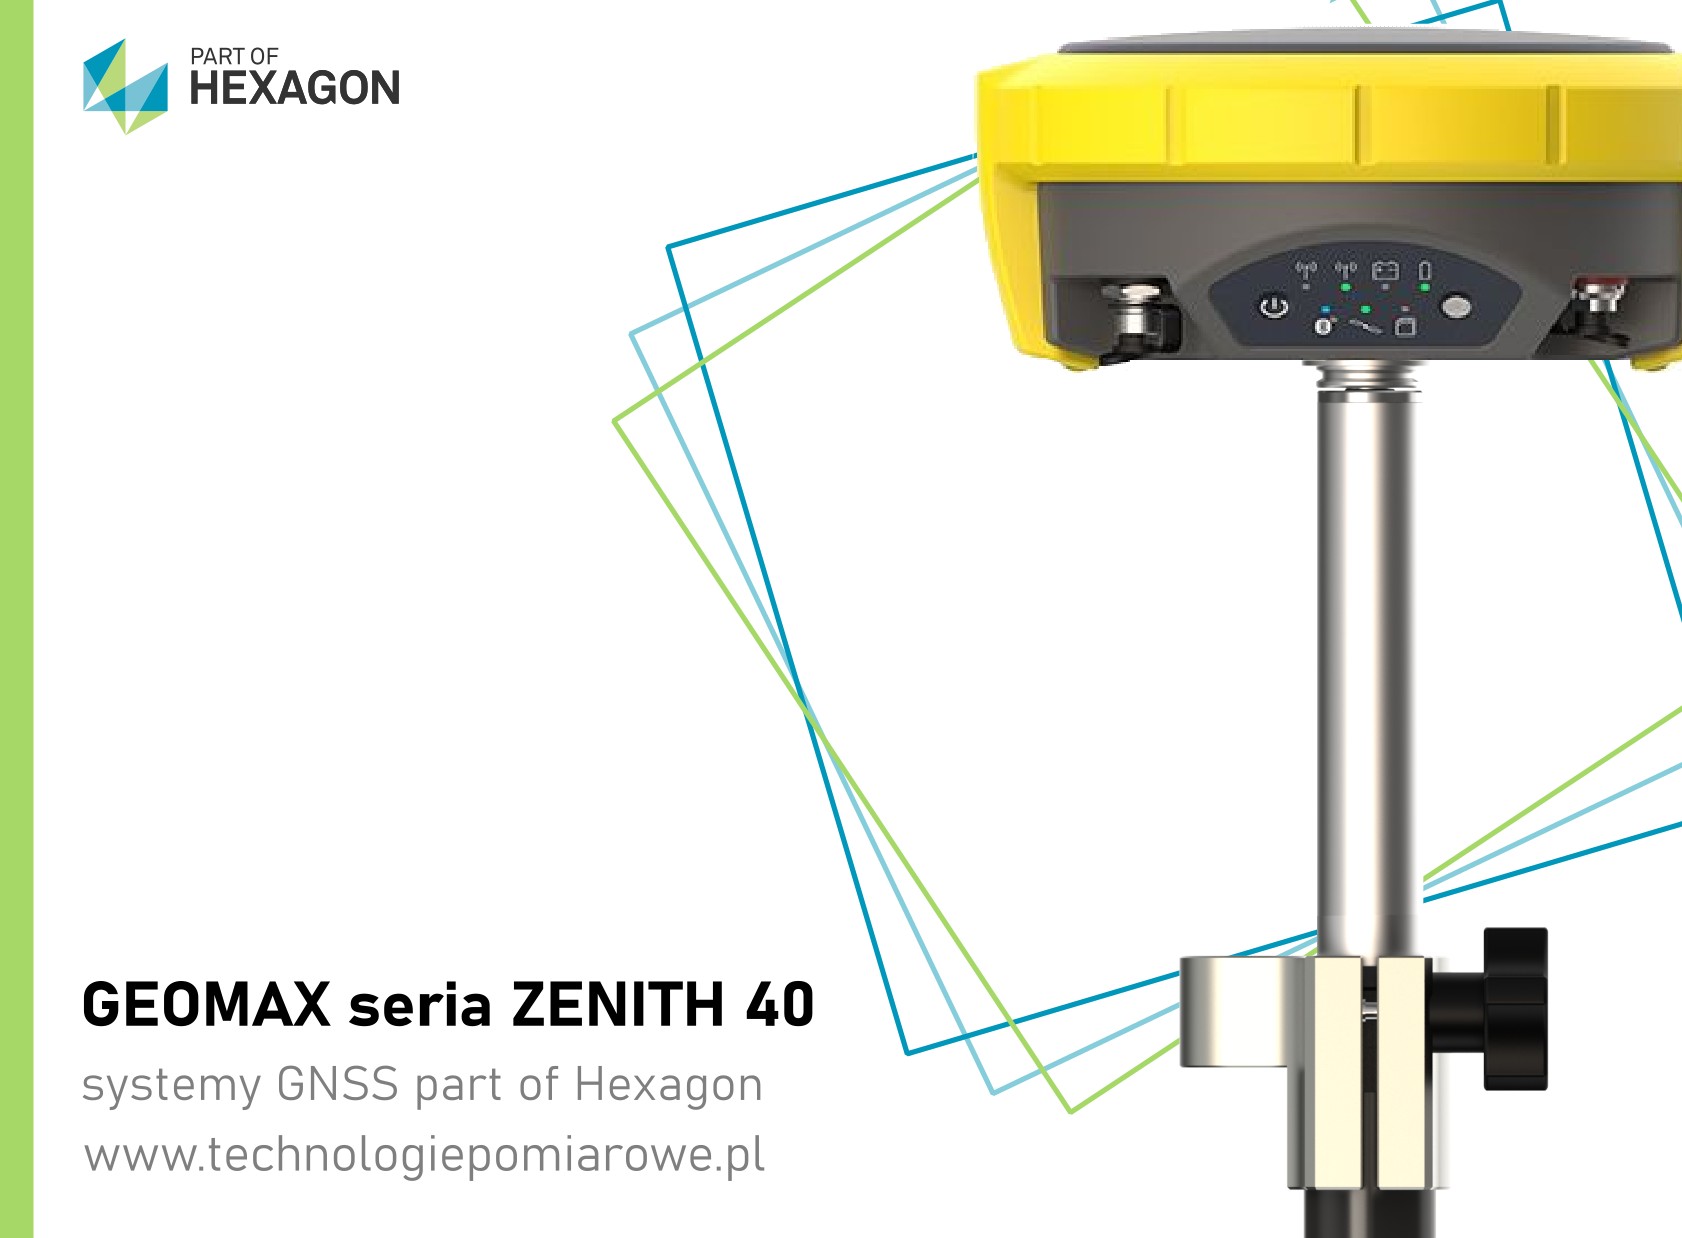 GeoMax GNSS GPS; Geodezyjny odbiornik GNSS RTK RTN szwajcarskiej marki Geomax model Zenith 40; Aktualna cena odbiornik GNSS RTK RTN Geomax model Zenith 40; Geomax odbiorniki GNSS RTK RTN sprawdź ofertę; Odbiornik GNSS Zenith 40 firmy GEOMAX; GNSS Geomax Zenith; Zapraszamy promocja Geomax Zenith 35 PRO TAG; cena geomax gps; odbiornik gnss geomax; cena geomax zenith 40; cena gps geomax; precyzyjny odbiornik RTK GNSS z pomiarem z wychyleniem geomax zenith 35 pro tag; odbiornik RTK z wychyleniem; geomax zenith 16 cena; geomax zenith 16 opinie; opinie o geomax gps; cena odbiornik Leica GS; Sprzęt geodezyjny-Odbiorniki GPS; Sklep geodezyjny z profesionalnym sprzętem w tym odbiorniki gps; Używany odbiornik GPS LEICA; zenith 16 cena; trimble r10 sprzedam; ranking gps geodezyjnych; geomax zenith 25 cena; trimble r10 cena; odbiornik GNSS marki Leica; Leica GPS GNSS RTK RTN; zestaw gps Leica; zestaw RTK Leica Geosystems; cena odbiornik Leica; cena odbiornik Leica GS18; odbiornik GNSS Leica; Leica GS18T cena; Ranking GPS geodezyjnych; Odbiornik GNSS cena; Leica GS16 cena; Tani odbiornik GPS RTK; Leica GS18T price; GPS geodezyjny cena; GPS Leica cena; Leica GS18 T; Sprzęt geodezyjny - Odbiorniki GPS; Używany odbiornik GPS LEICA GS15 z kontrolerem CS15; Odbiornik GPS + GLONASS marki Leica model GS15; odbiornik Trimble R12; Trimble R12 cena; Trimble R10 Sprzedam; Trimble R12 price; Trimble R12 eBay; Trimble R12 opinie; Trimble R12 IMU; Trimble R10 cena; Trimble Geodezja; trimble r10 sprzedam;geomax zenith 35 opinie; Odbiornik z wychyleniem model Zenith 35 TAG marki Geomax; Zintegrowany czujnik wychylenia zestaw RTK GNSS; odbiornik ruchomy GNSS RTK; odbiornik GNSS RTL z systemem TILT; Oferta systemów geodezyjnych: odbiornik GNSS RTK marki SOUTH model S82T; Sprawdź aktualne promocja odbiornik gnss rtk SOUTH model S82T; Aktualna cena odbiornik GNSS RTK RTN SOUTH model S82T; Komis sprzętu geodezyjnego oferuje odbiornik gnss rtk marki SOUTH model S82T; odbiornik GNSS Kolida; kolida k5 infinity; kolida s680p cena; kolida h3; pentax g6ti; geopryzmat raport gps; gps kolida k5 infinity; kolida ufo; kolida k58+; używany sprzęt geodezyjny; tani zestaw RTK; tani zestaw GNSS; tani odbiornik RTK; tani zestaw odbiornika GNSS; odbiornik SOUTH S82T; sklep geodezyjny odbiorniki RTK GNSS; chiński gps rtk; tani odbiornik gps rtk; jaki gps dla geodety; ruide gps opinie; zestaw gps rtk; gps ruide; gps w geodezji; gps kolida; odbiornik gnss rtk south galaxy G6 IMU; odbiornik gnss rtk south galaxy g6; odbiornik gnss rtk southg1; odbiornik gnss rtk southg1 plus; odbiornik gnss rtk south s660; odbiornik gnss rtk south s86; odbiornik gnss rtk kolida k5 infinity; odbiornik gnss rtk kolida K9T; odbiornik gnss rtk kolida K1; odbiornik gnss rtk kolida K20; odbiornik gnss rtk kolida K3; odbiornik gnss rtk kolida K5 IMU; odbiornik gnss rtk kolida K5 UFO; odbiornik gnss rtk kolida 680; odbiornik gnss rtk stonex S900; odbiornik gnss rtk stonex S850; odbiornik gnss rtk stonex S700; odbiornik gnss rtk ruide; pulsar; odbiornik gnss rtk ruide nova R6; odbiornik gnss rtk ruide meteor S680; odbiornik gnss rtk ruide r90i; profesjonalne odbiorniki GNSS RTK szwajcarska marka Geomax; odbiorniki serii Geomax Zenith 40; odbiornik geodezyjny; gps geodezyjny leica; chiński gps geodezyjny; gps geodezyjny dokładność; gps geodezyjny wypożyczalnia; po leasingowy sprzęt geodezyjny; odbiornik gnss; pełny system GPS GLONASS GALILEO BEIDOU; Leica GS18T cena; Leica GPS; Leica GS16 cena; Leica GS18T price; GPS geodezyjny Trimble; Odbiornik GNSS RTK SP85; odbiornik GNSS; Odbiornik GNSS cena; Stonex S9; GPS RTK sprzedam